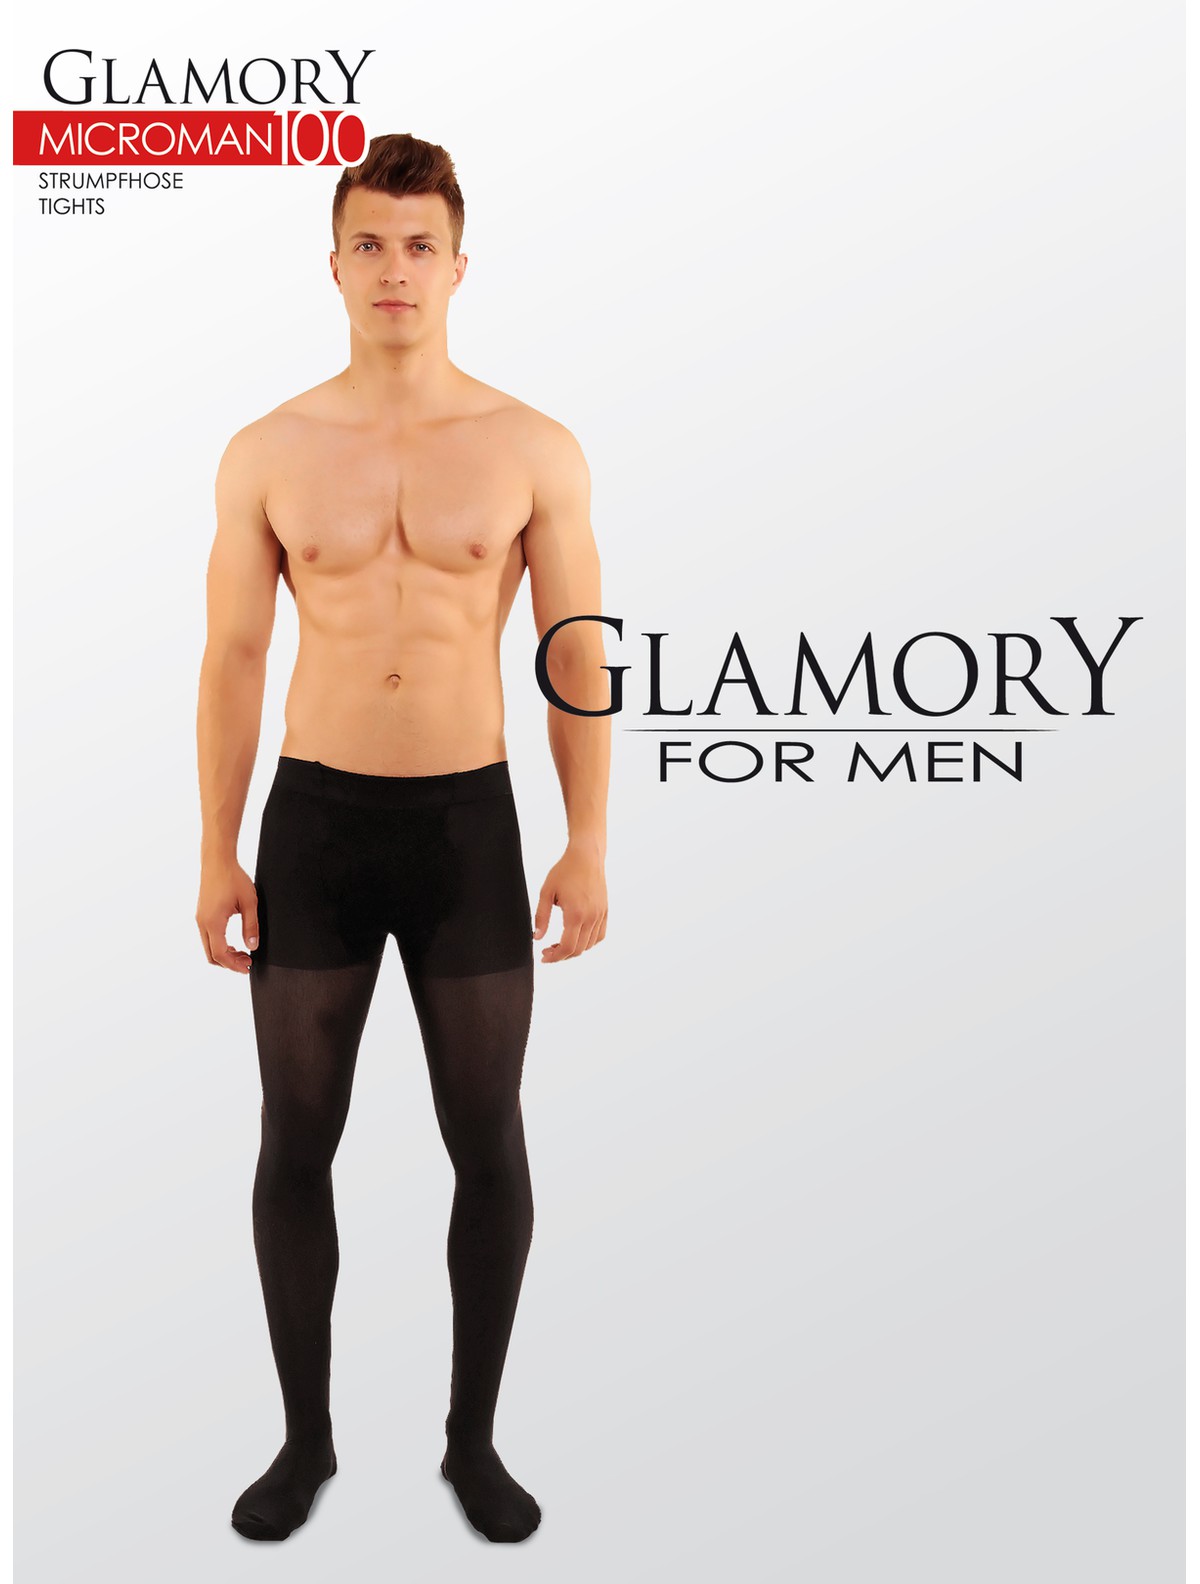 Glamory for Men Microman 100 Strumpfhose - schwarz